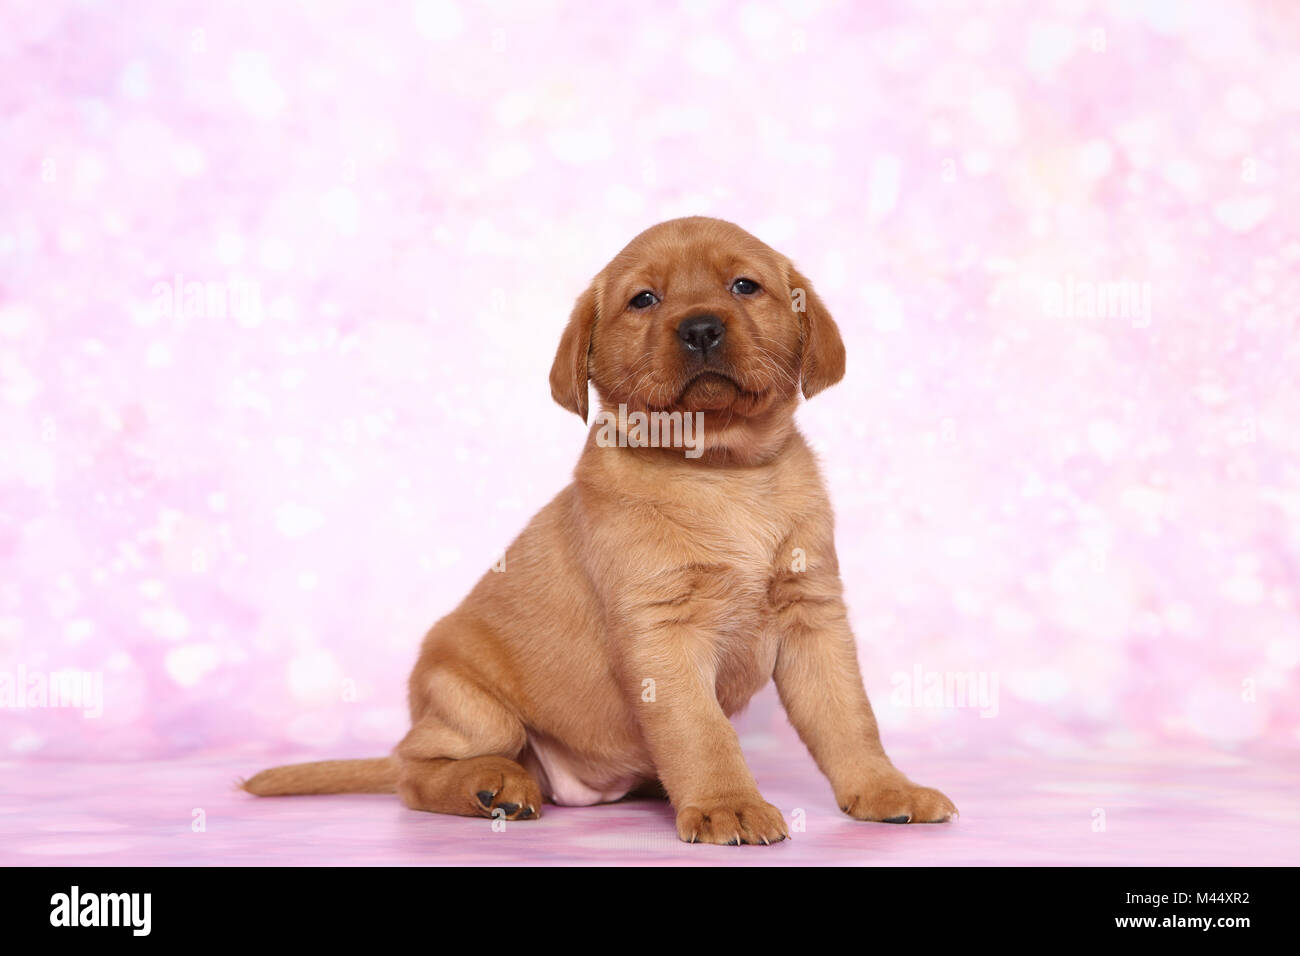 Il Labrador Retriever. Cucciolo (6 settimane di età) seduta. Studio Immagine visto contro un sfondo rosa. Germania Foto Stock